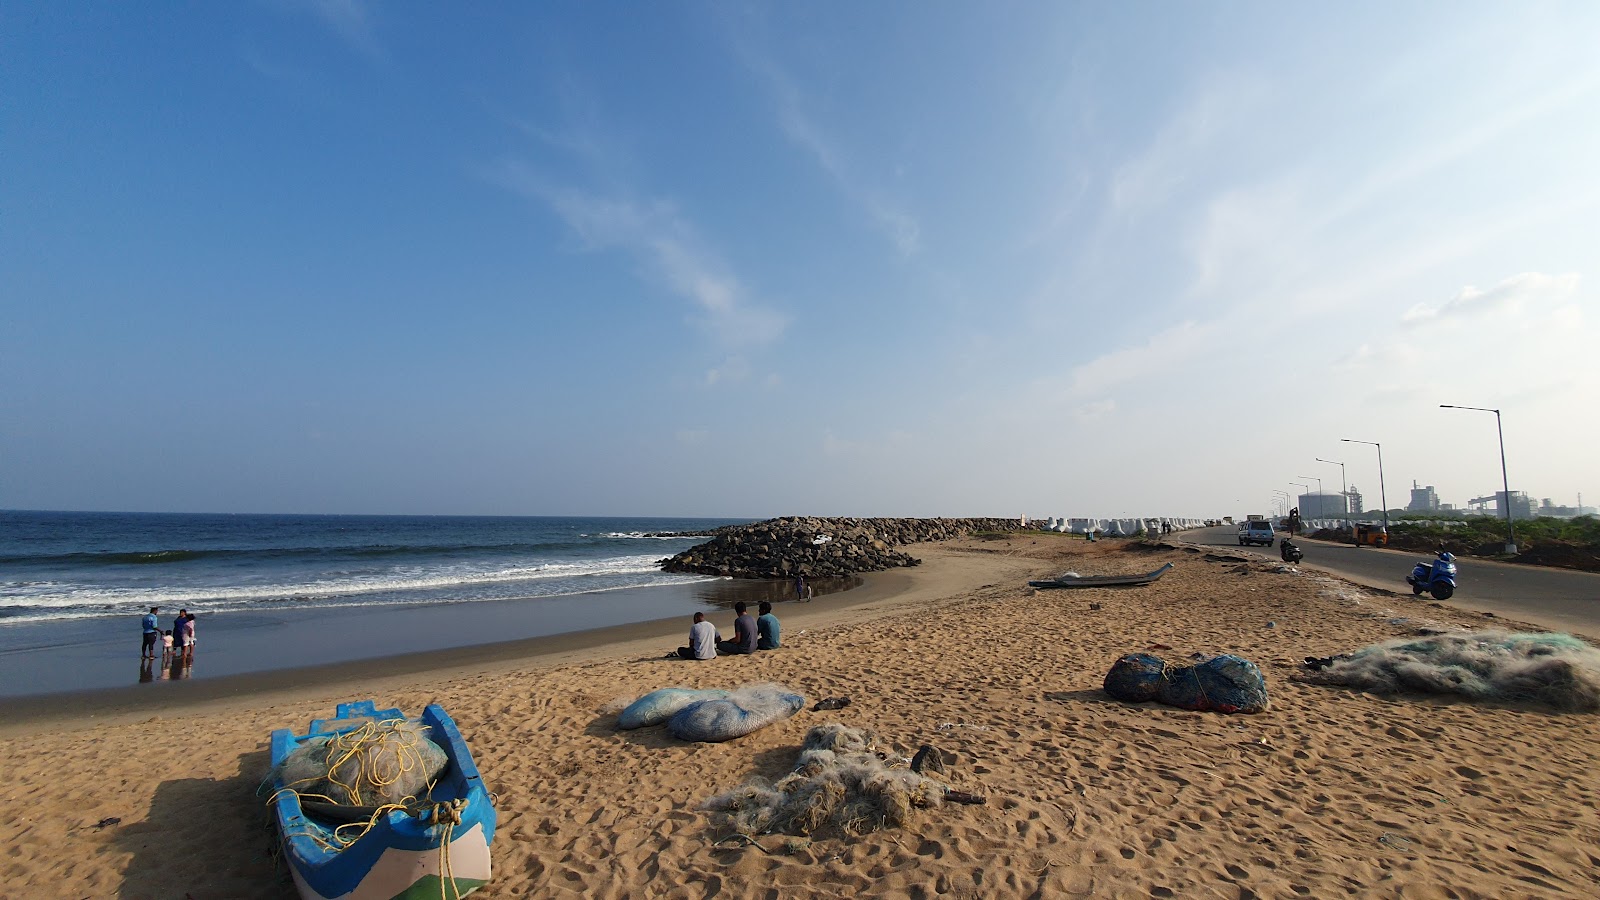 Ennore Thazankuppam Breakwater Beach View'in fotoğrafı kısmen temiz temizlik seviyesi ile